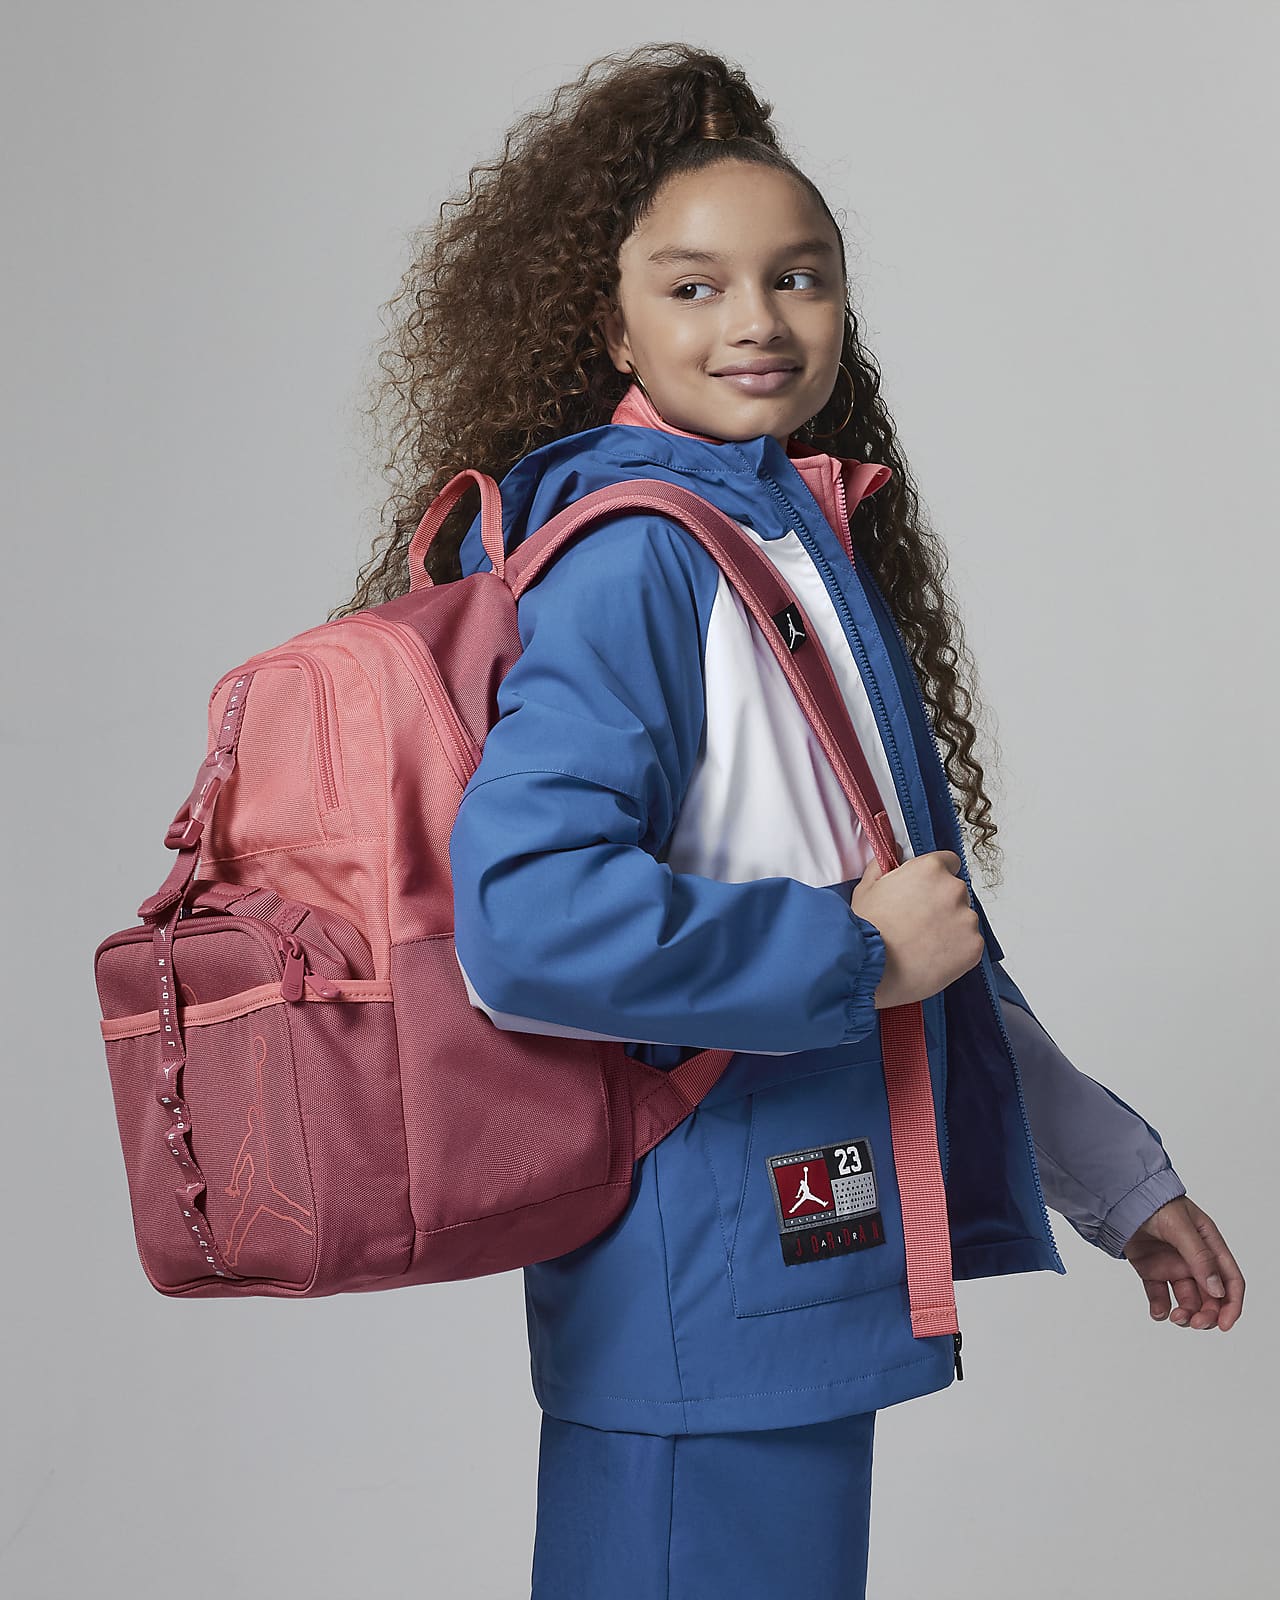 Plecak dla dużych dzieci Air Jordan Lunch Backpack (18 l) i torba śniadaniowa (3 l)